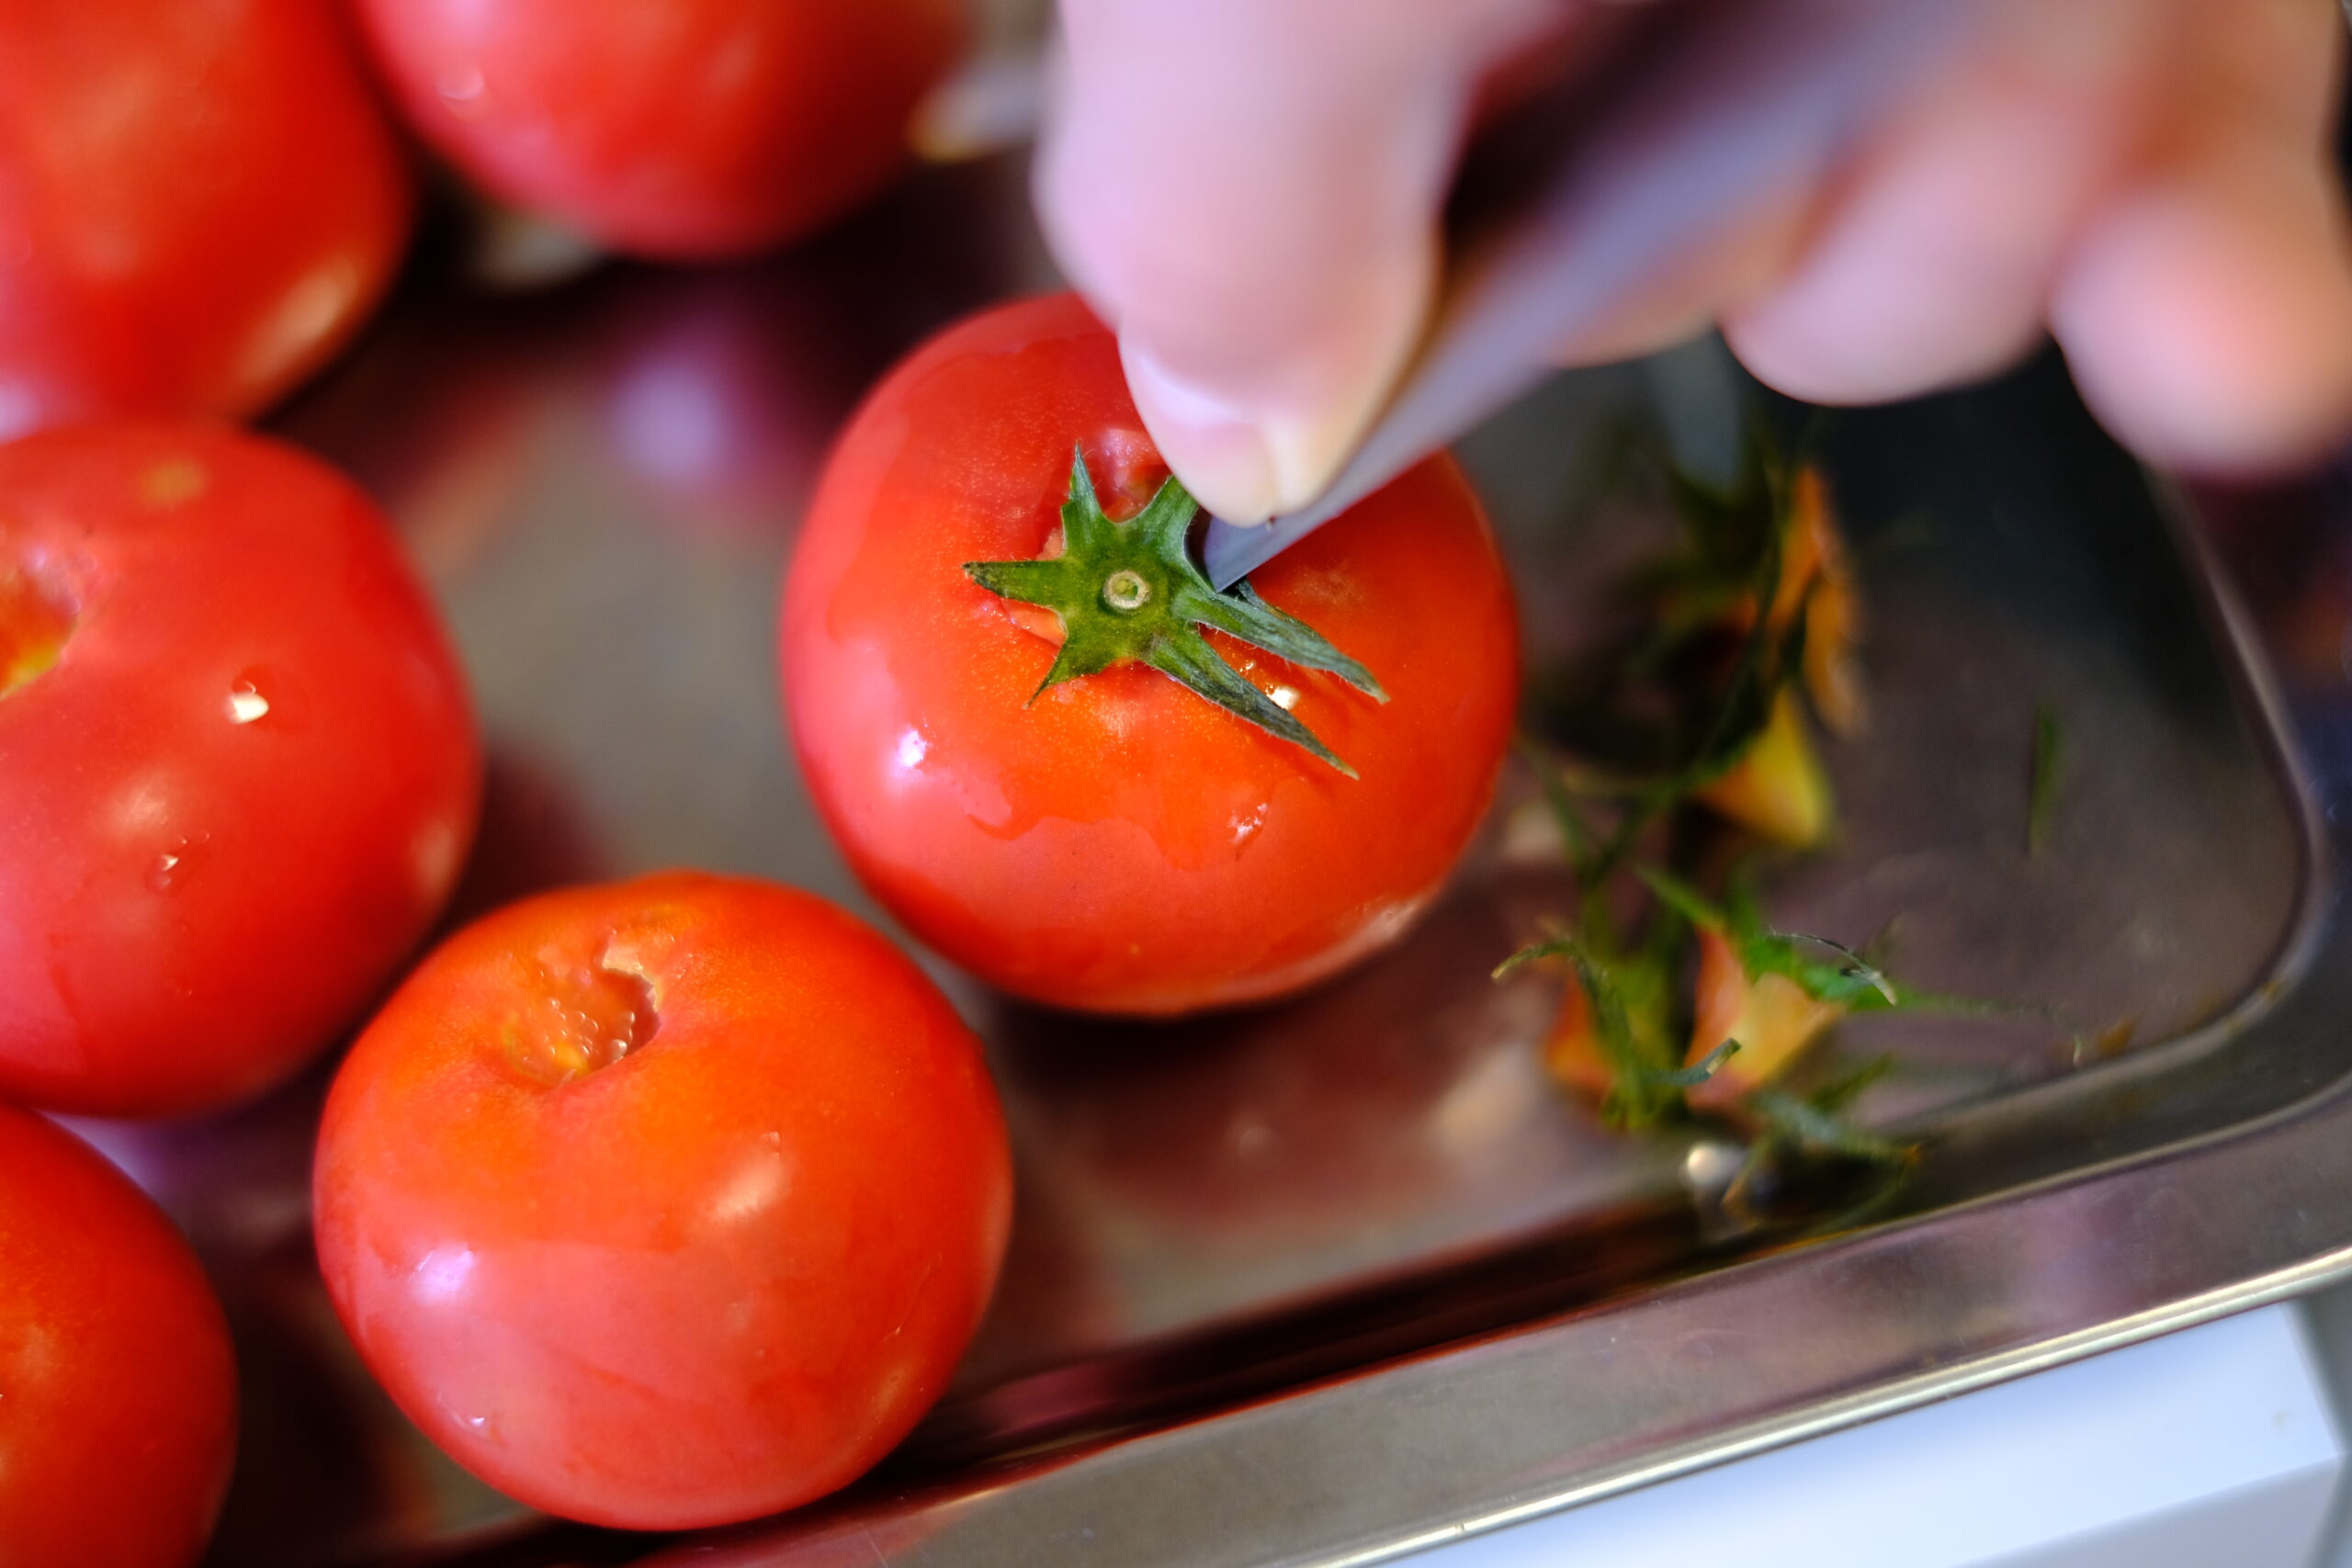 ペティーナイフを使ってフルーツトマトのヘタと芯を取り除く様子の画像です